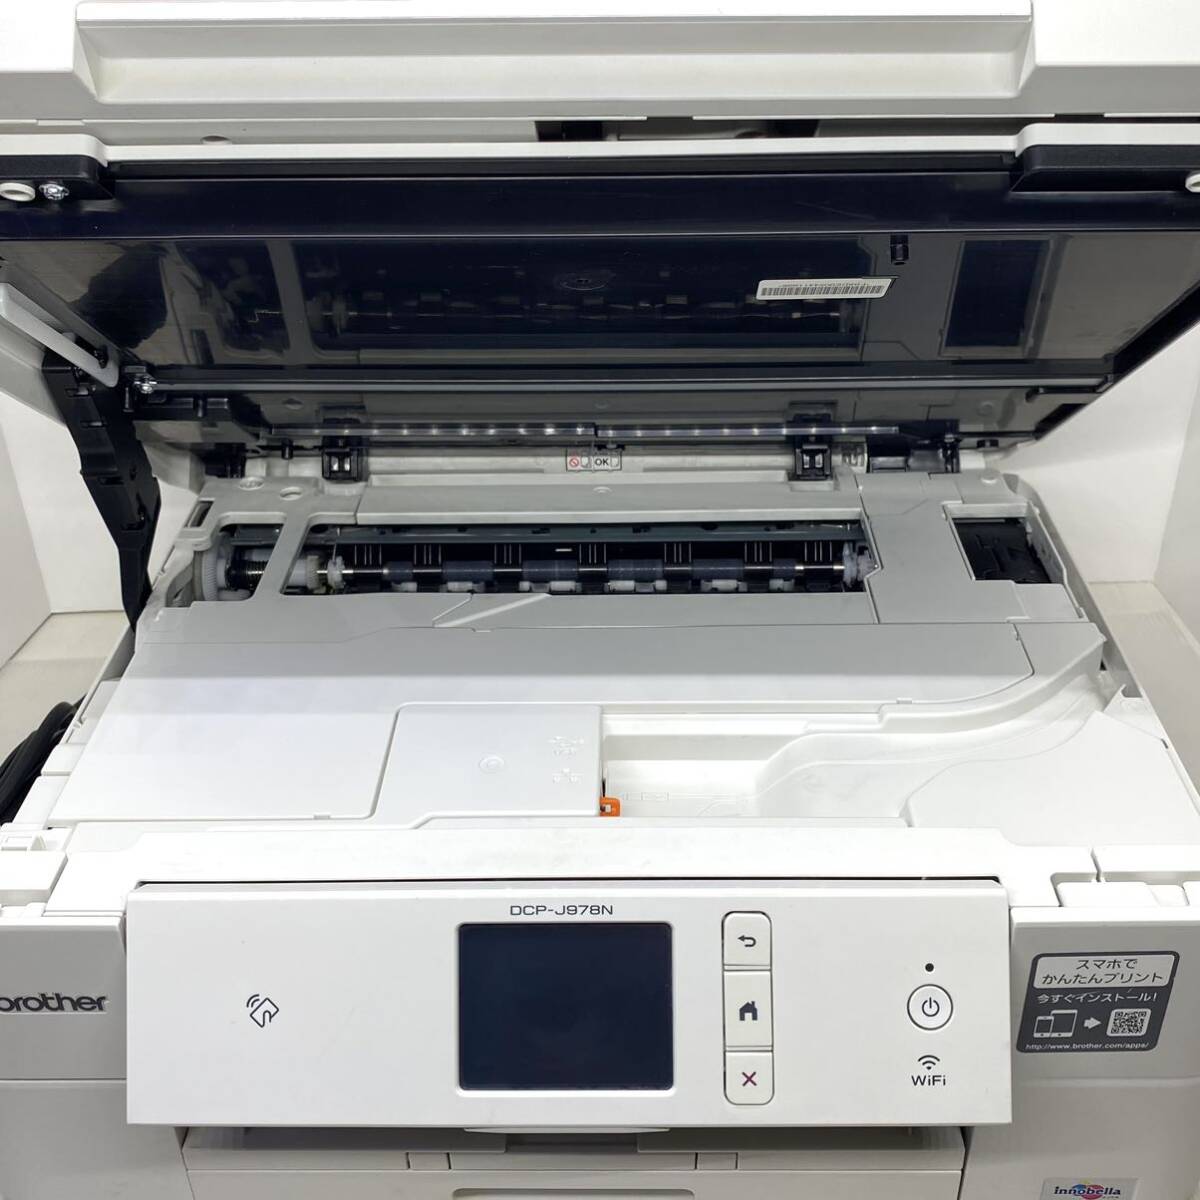 ブラザー プリンター A4 インクジェット複合機 DCP-J978N-W 総印刷枚数10942枚 ホワイトWi-Fi 手差しトレイ ADF機能 両面印刷 レーベル印刷_画像7